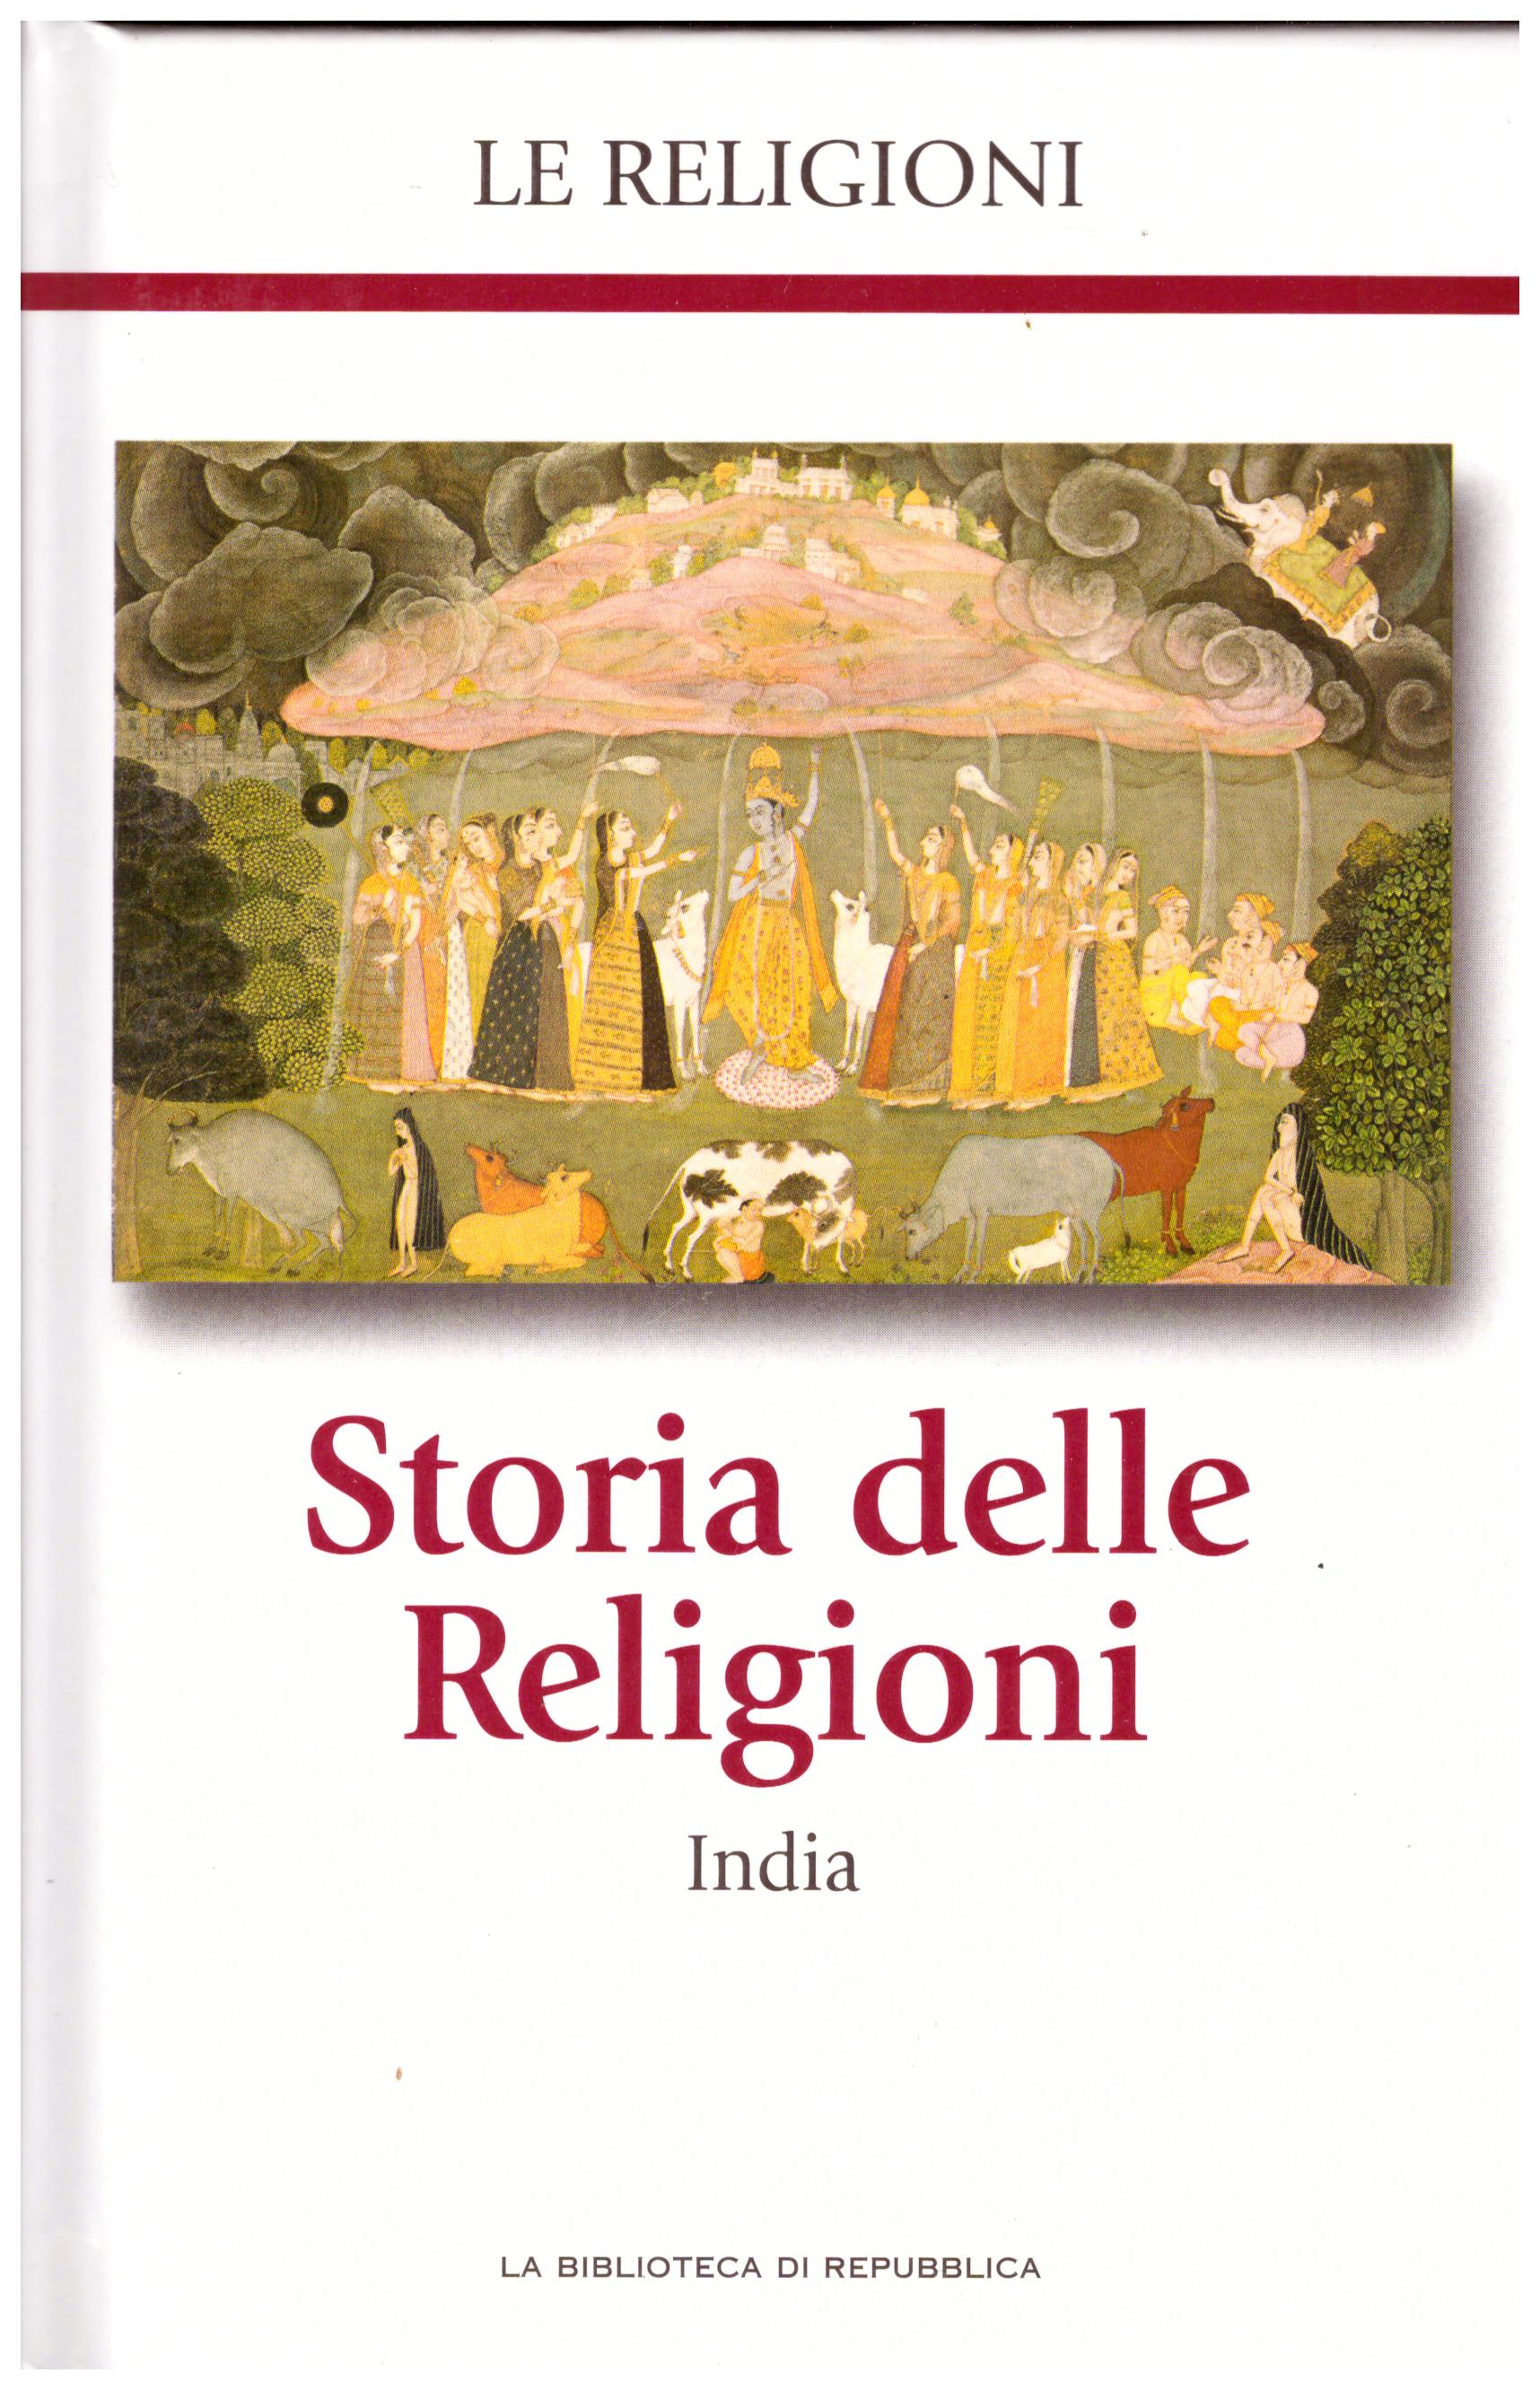 Titolo: Le religioni, Storia delle religioni, India N.9      Autore: AA.VV, la biblioteca di Repubblica     Editore: Piemme